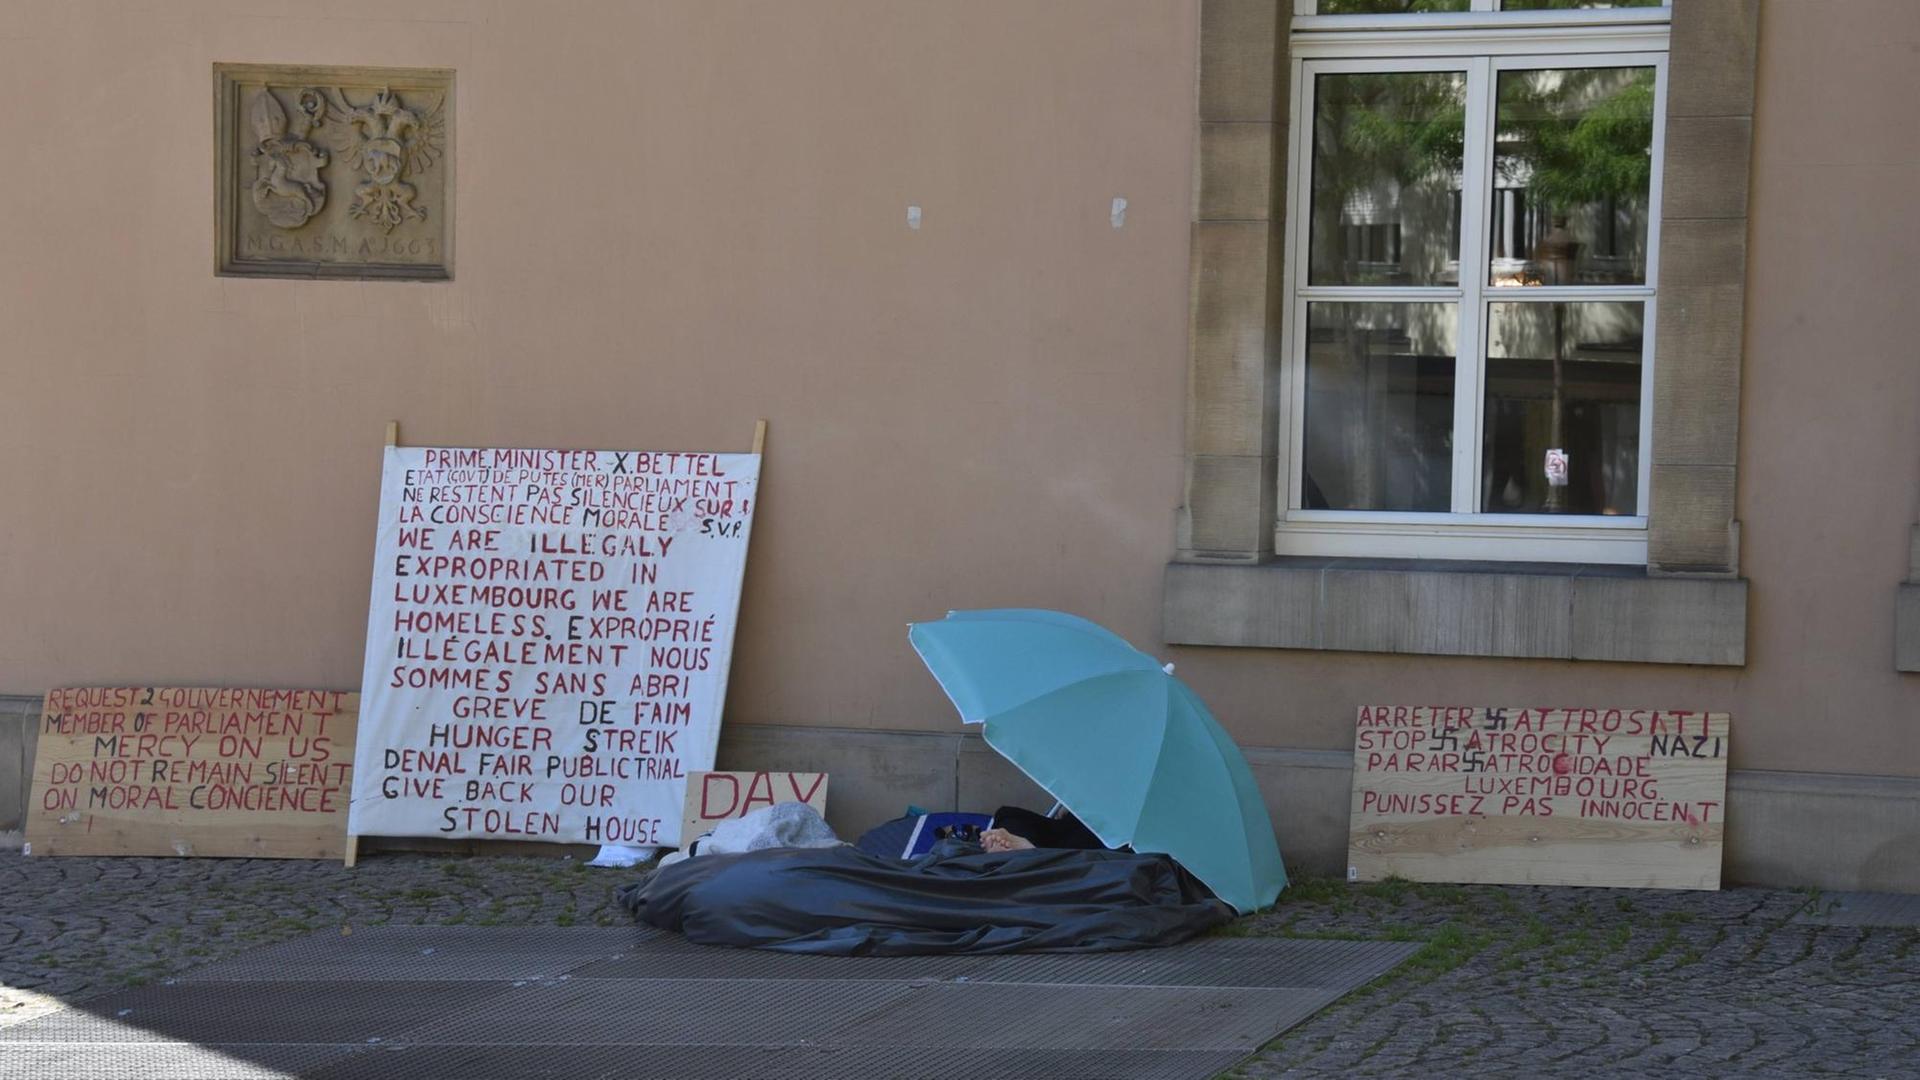 Ein Obdachloser mit Protest-Schildern, hinter einem Regenschirm verborgen, sitzt an einer Hauswand in Luxemburg am Place de Clairefontaine, im August 2016.